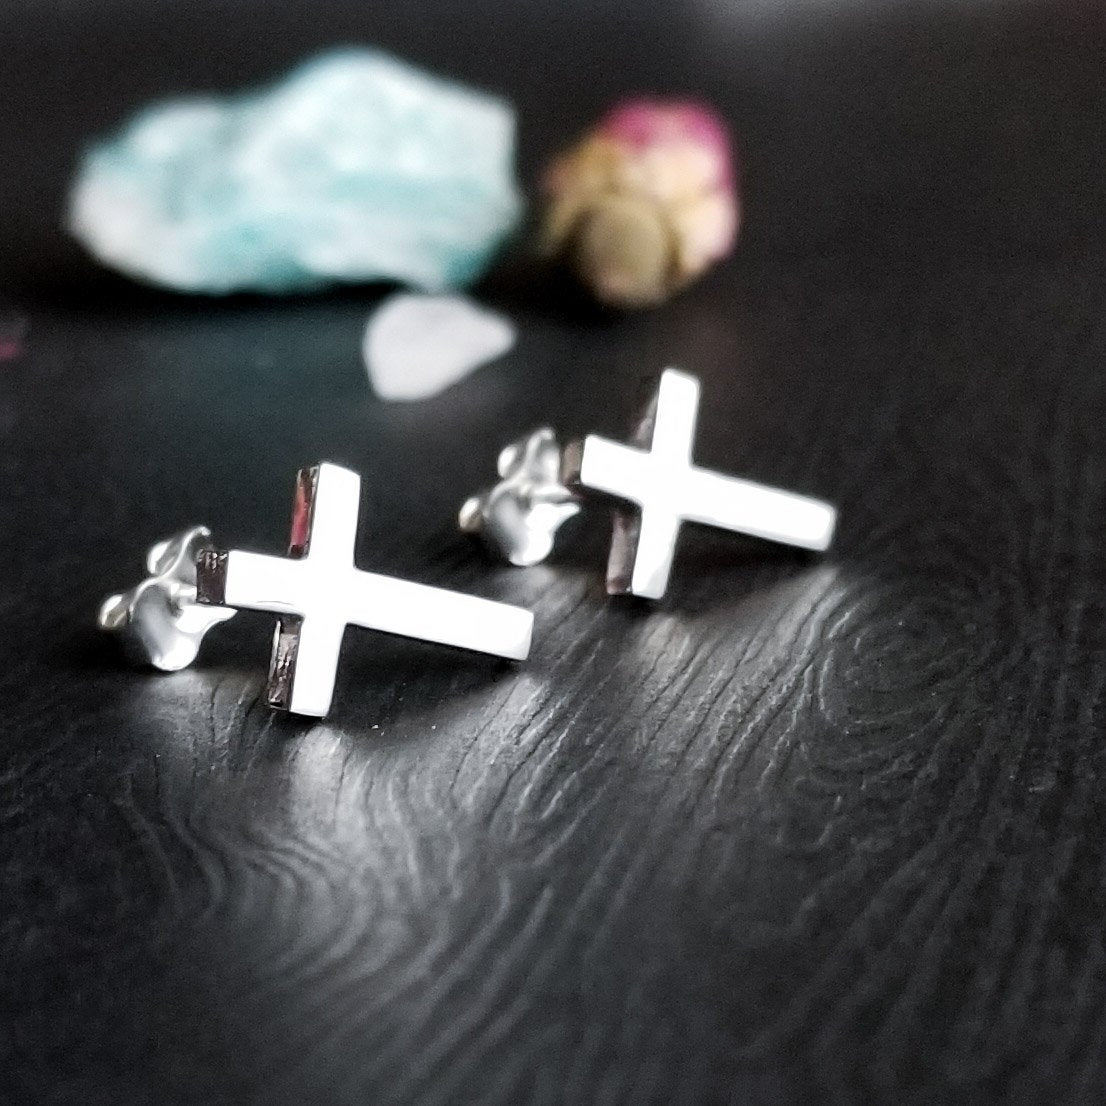 Simple Small Cross Earrings - Inchoo Bijoux